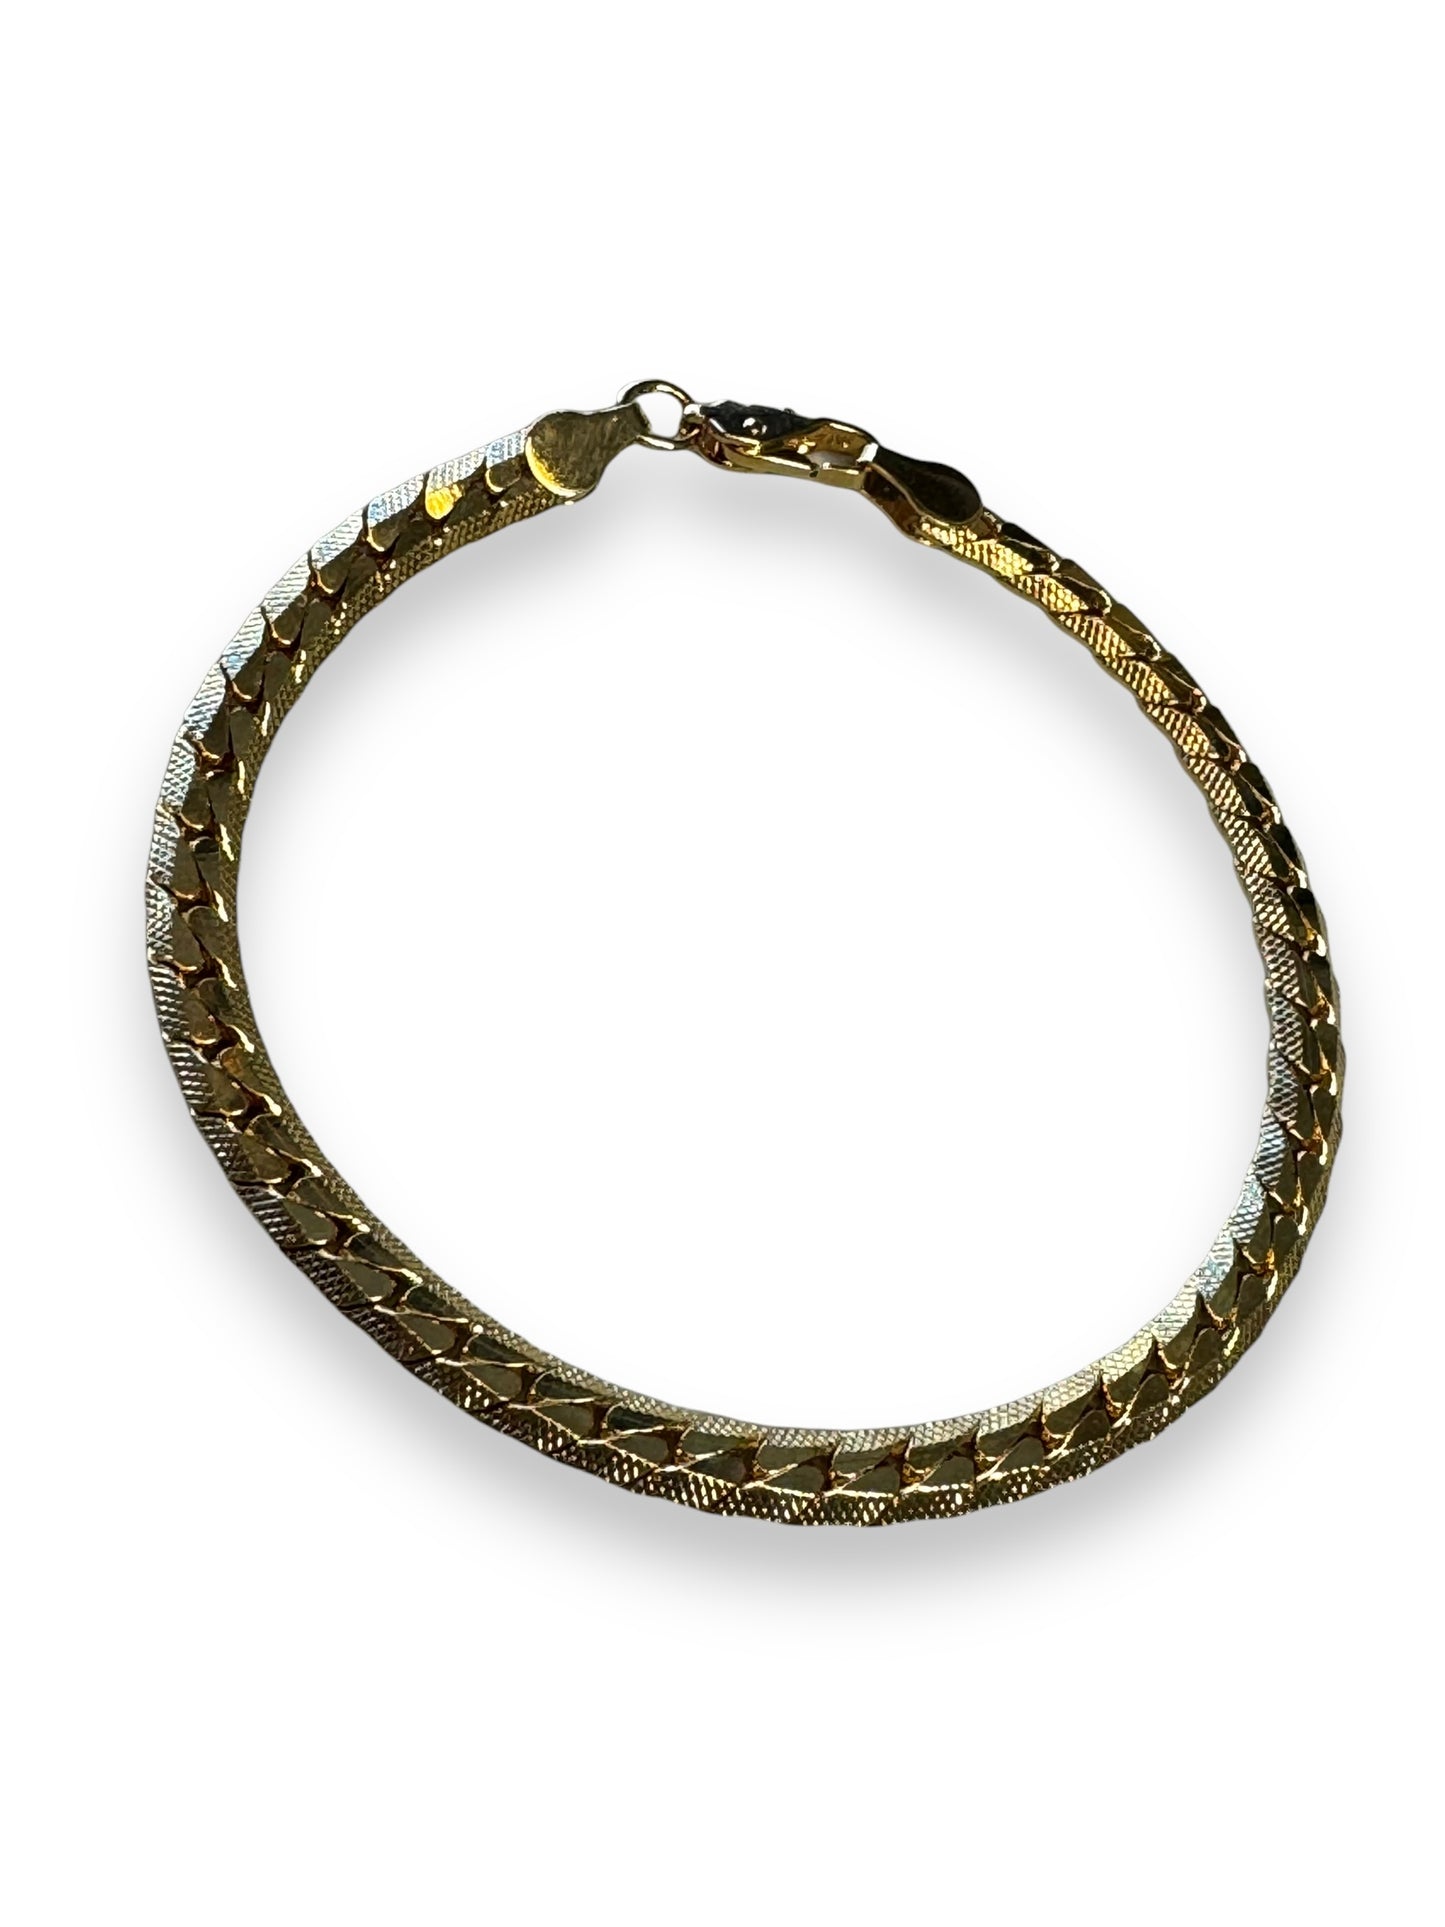 1970s Vintage Woven Chain Bracelet